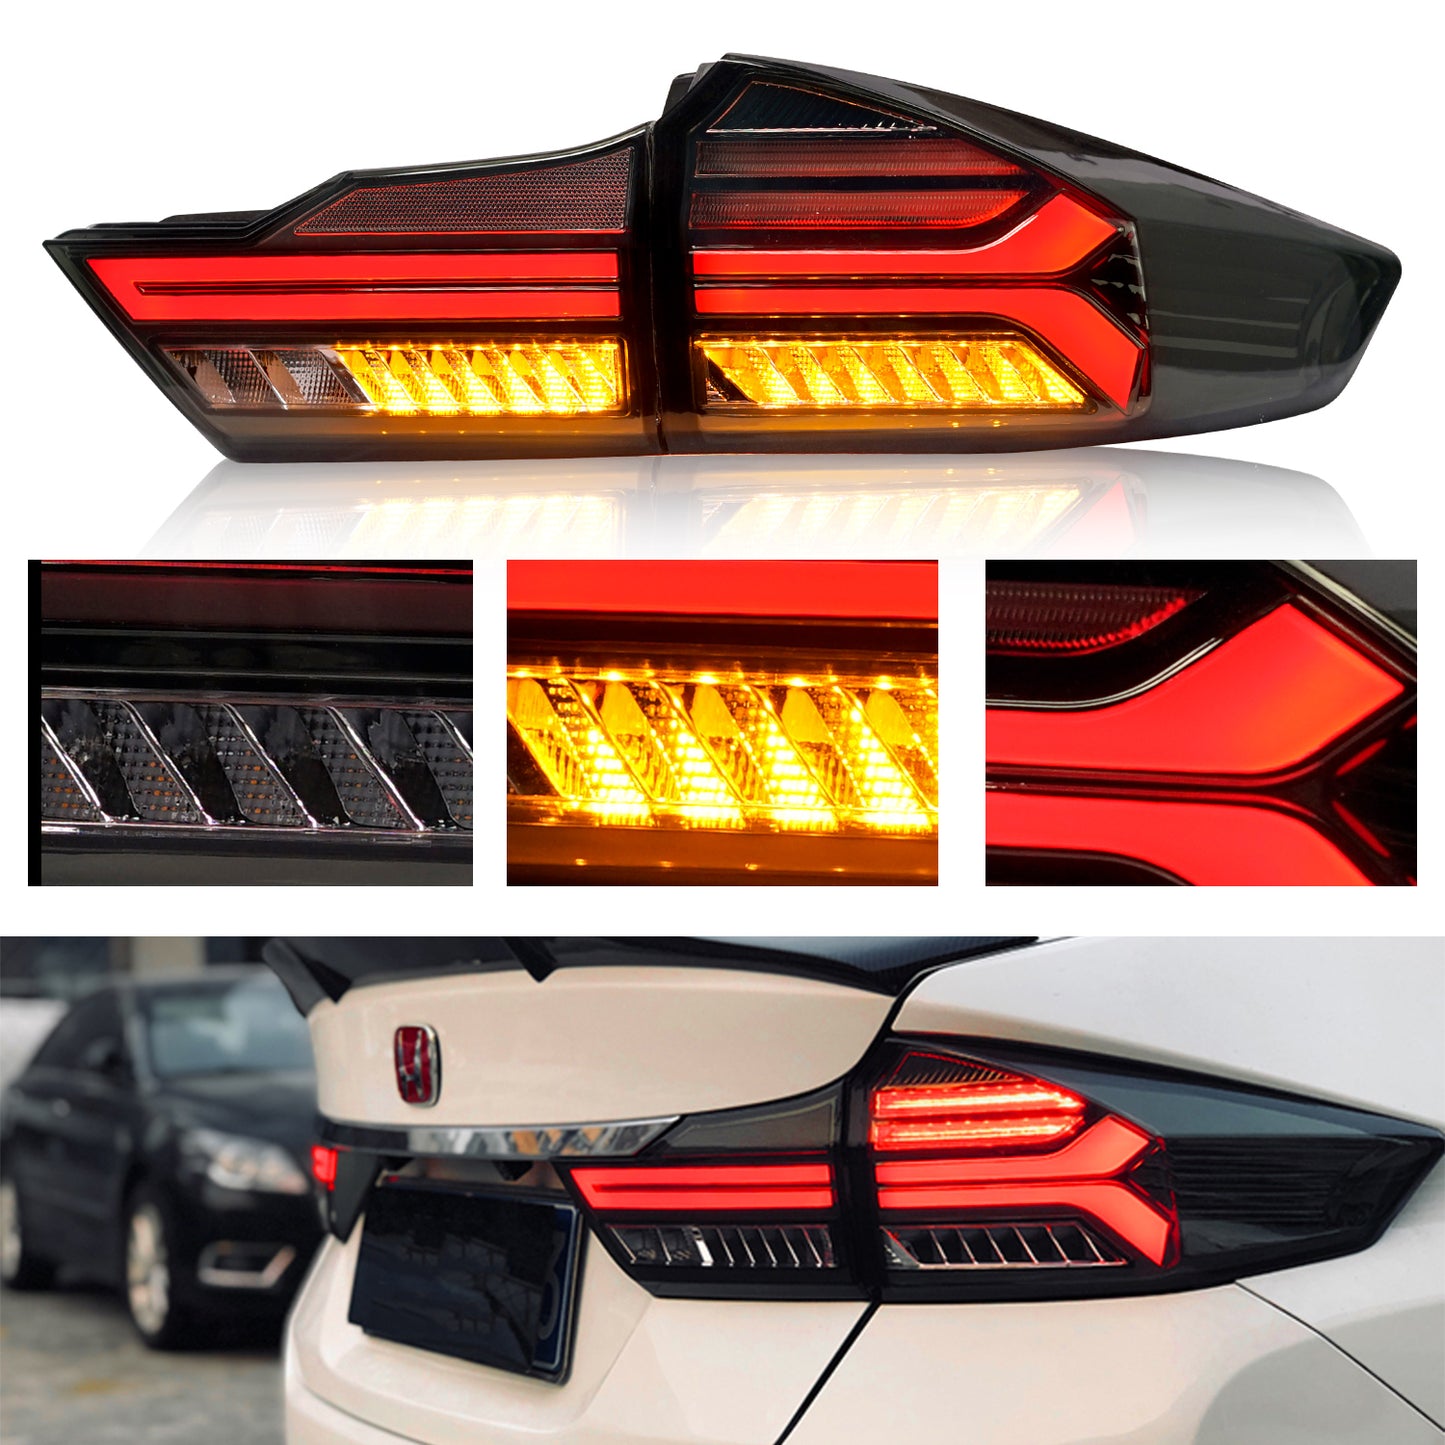 Full LED Tail Lights Assembly For Honda City 2014-2020